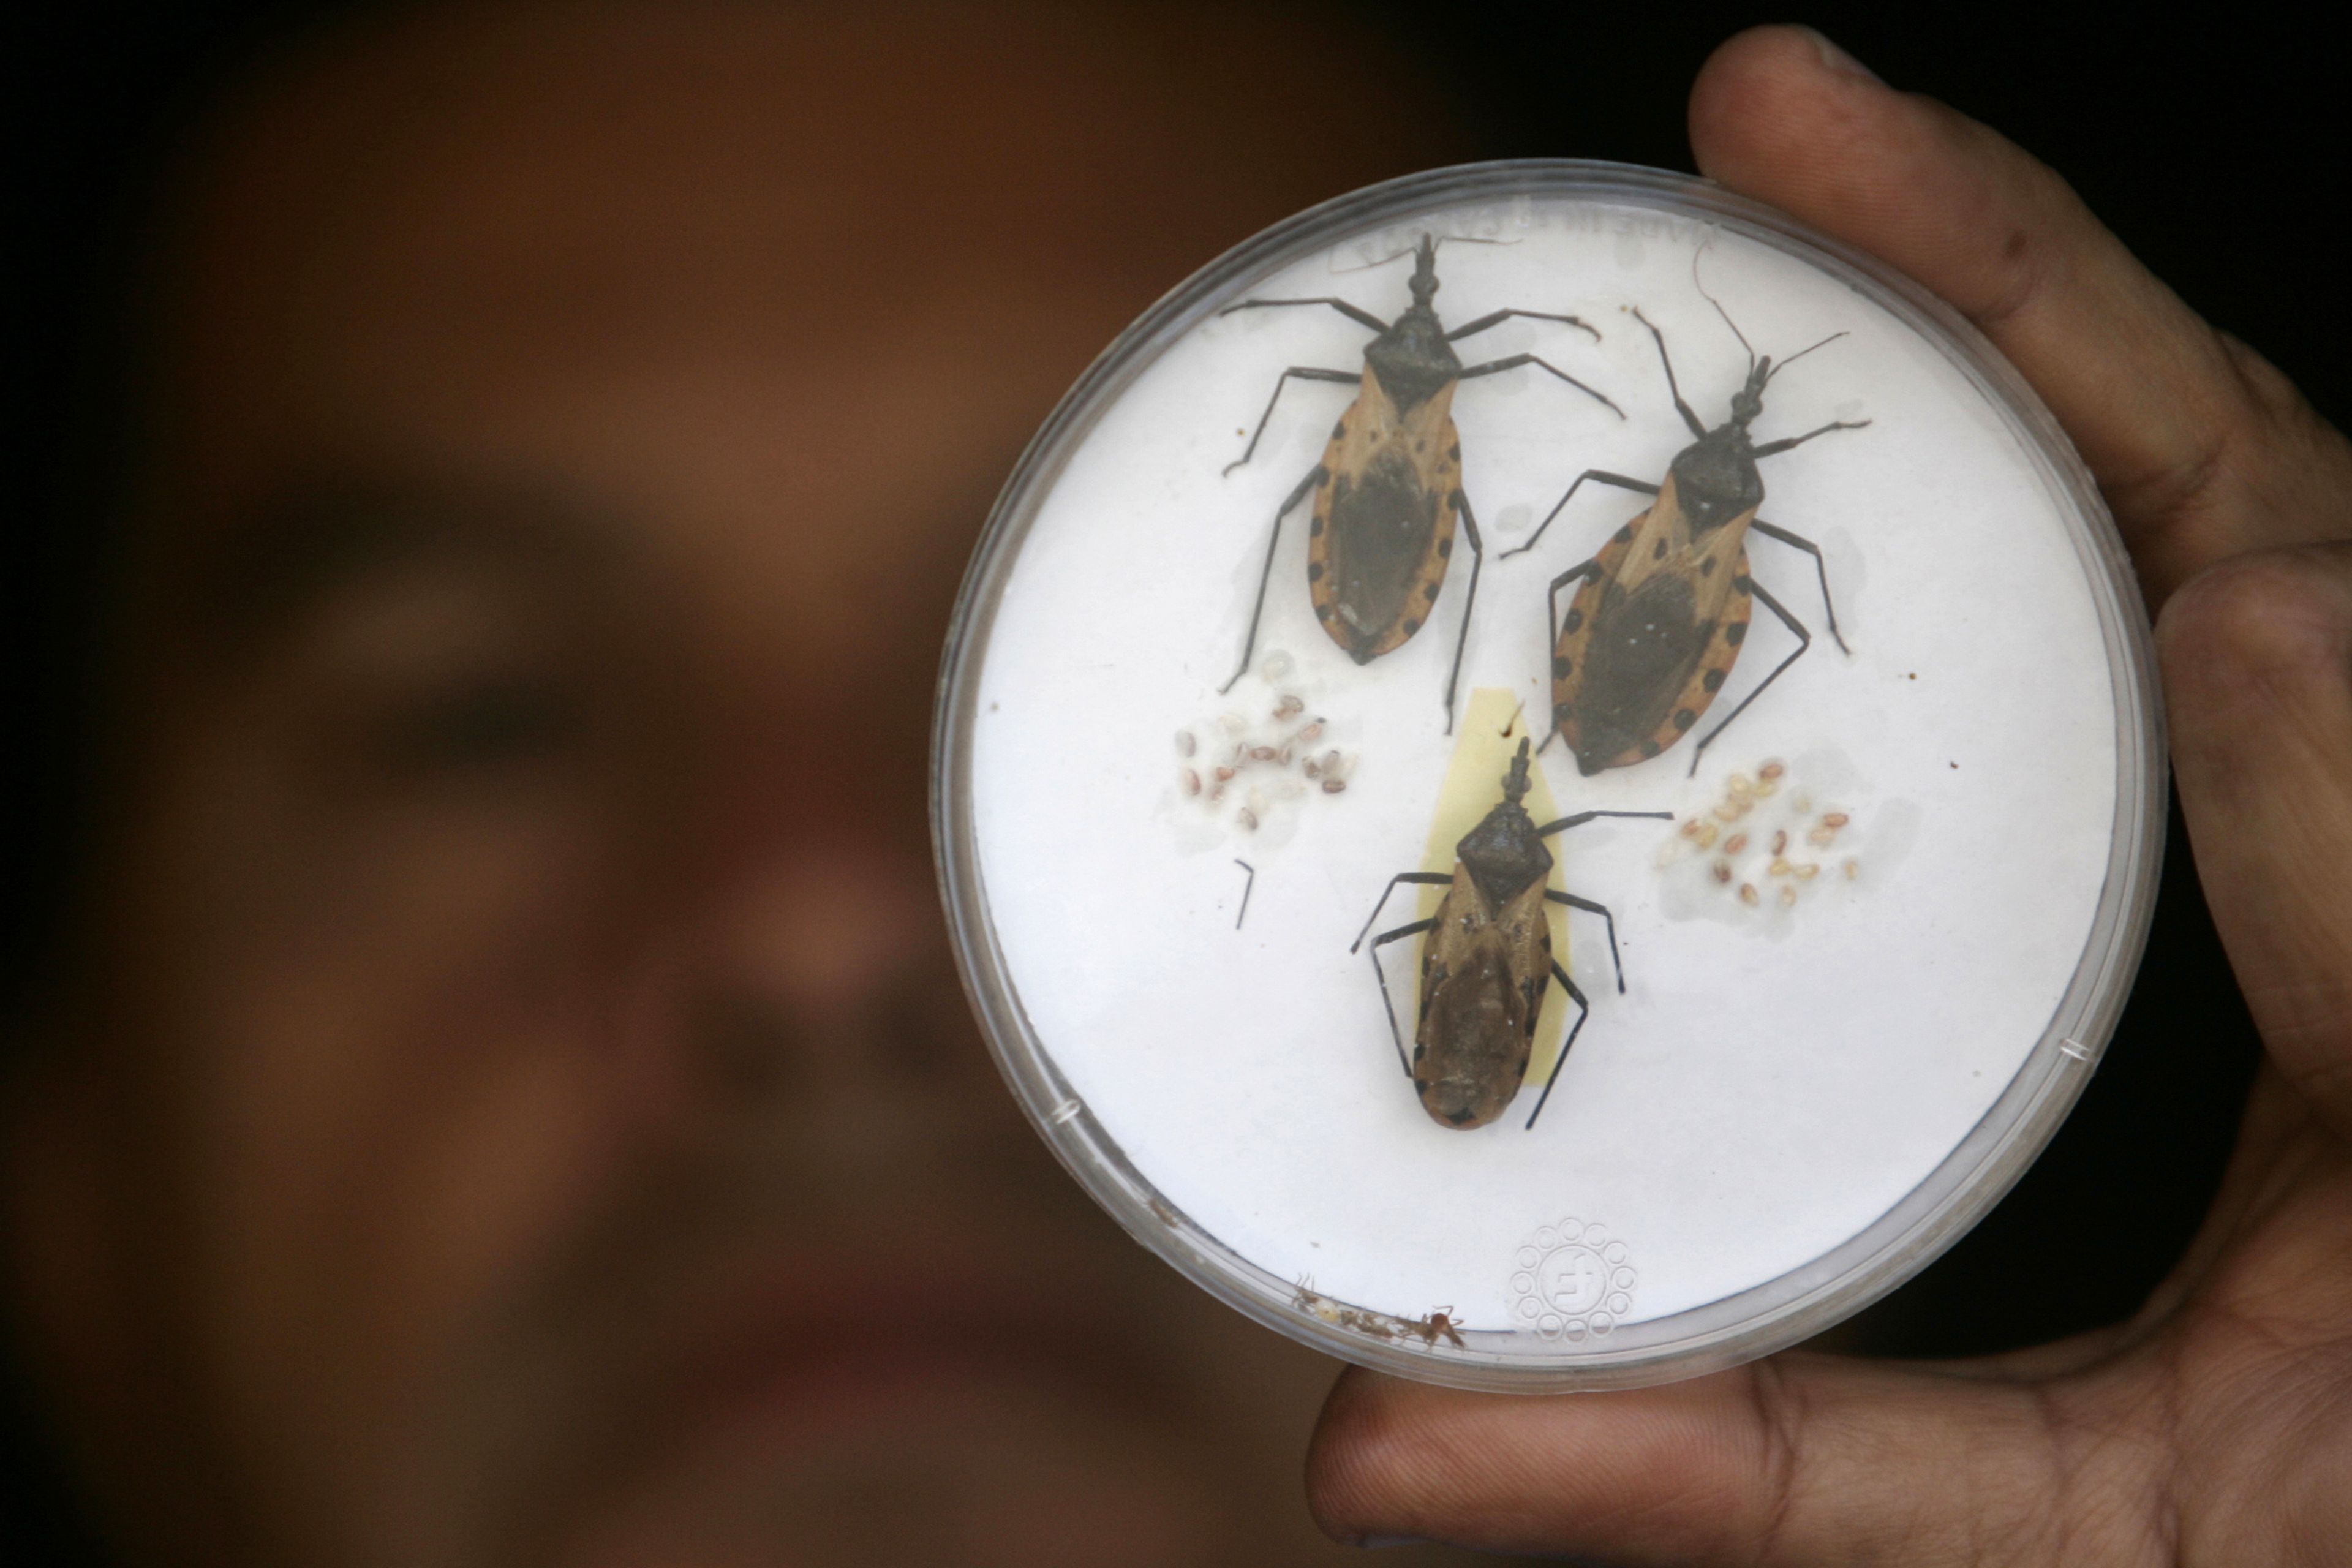 Tres ejemplares de Triatoma dimidiatas, un tipo de insecto chupador de sangre que propaga la enfermedad de Chagas.